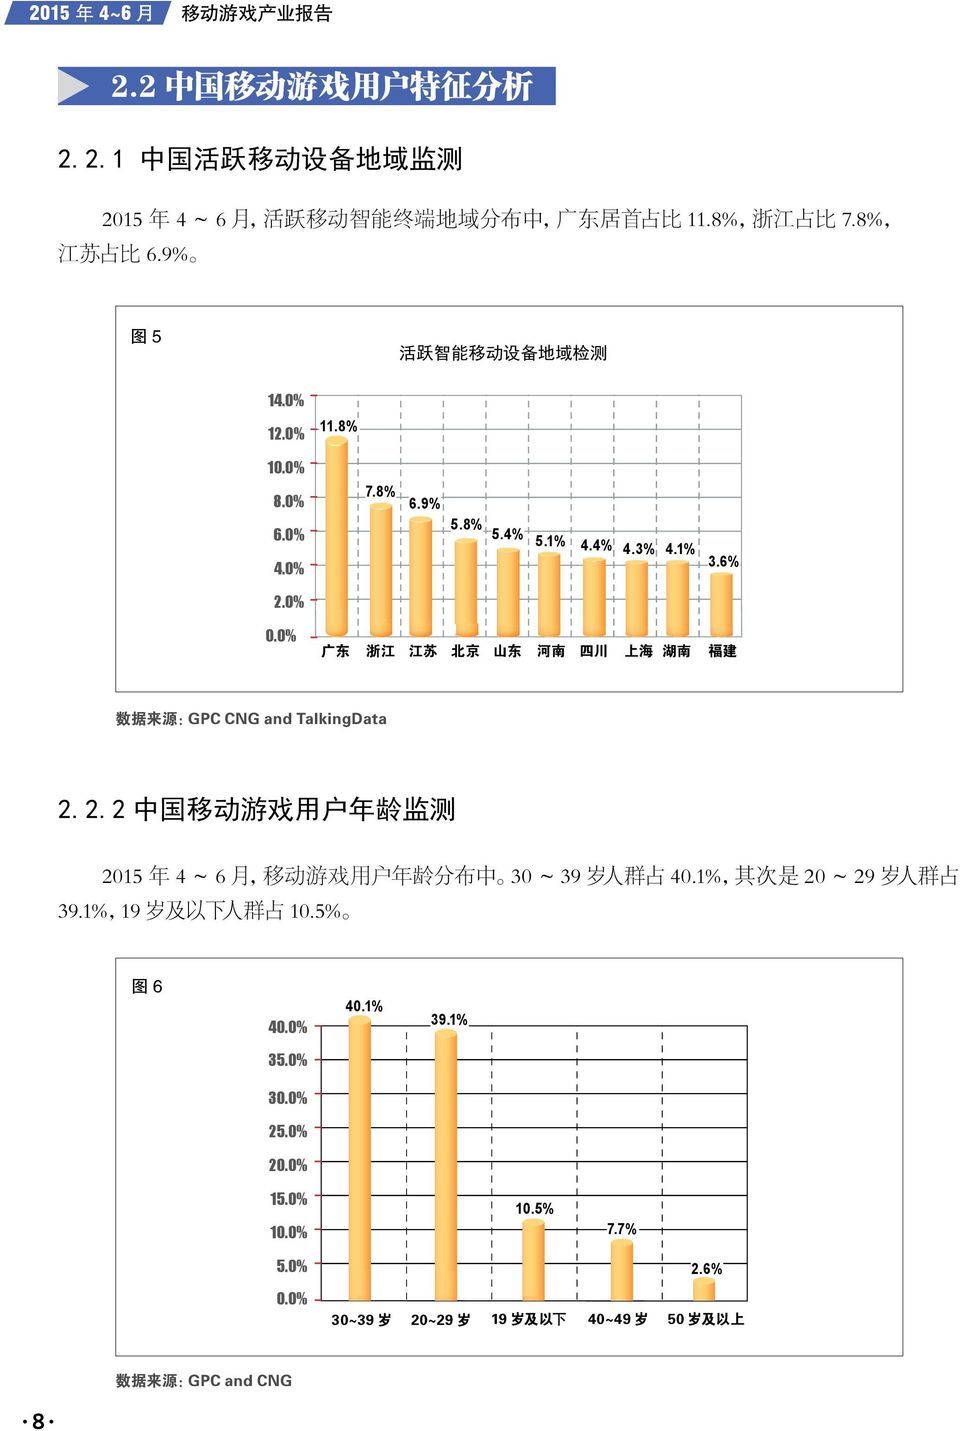 0% 广 东 浙 江 江 苏 北 京 山 东 河 南 四 川 上 海 湖 南 福 建 数 据 来 源 :GPC CNG and TalkingData 2.2.2 中 国 移 动 游 戏 用 户 年 龄 监 测 2015 年 4 ~ 6 月, 移 动 游 戏 用 户 年 龄 分 布 中 30 ~ 39 岁 人 群 占 40.